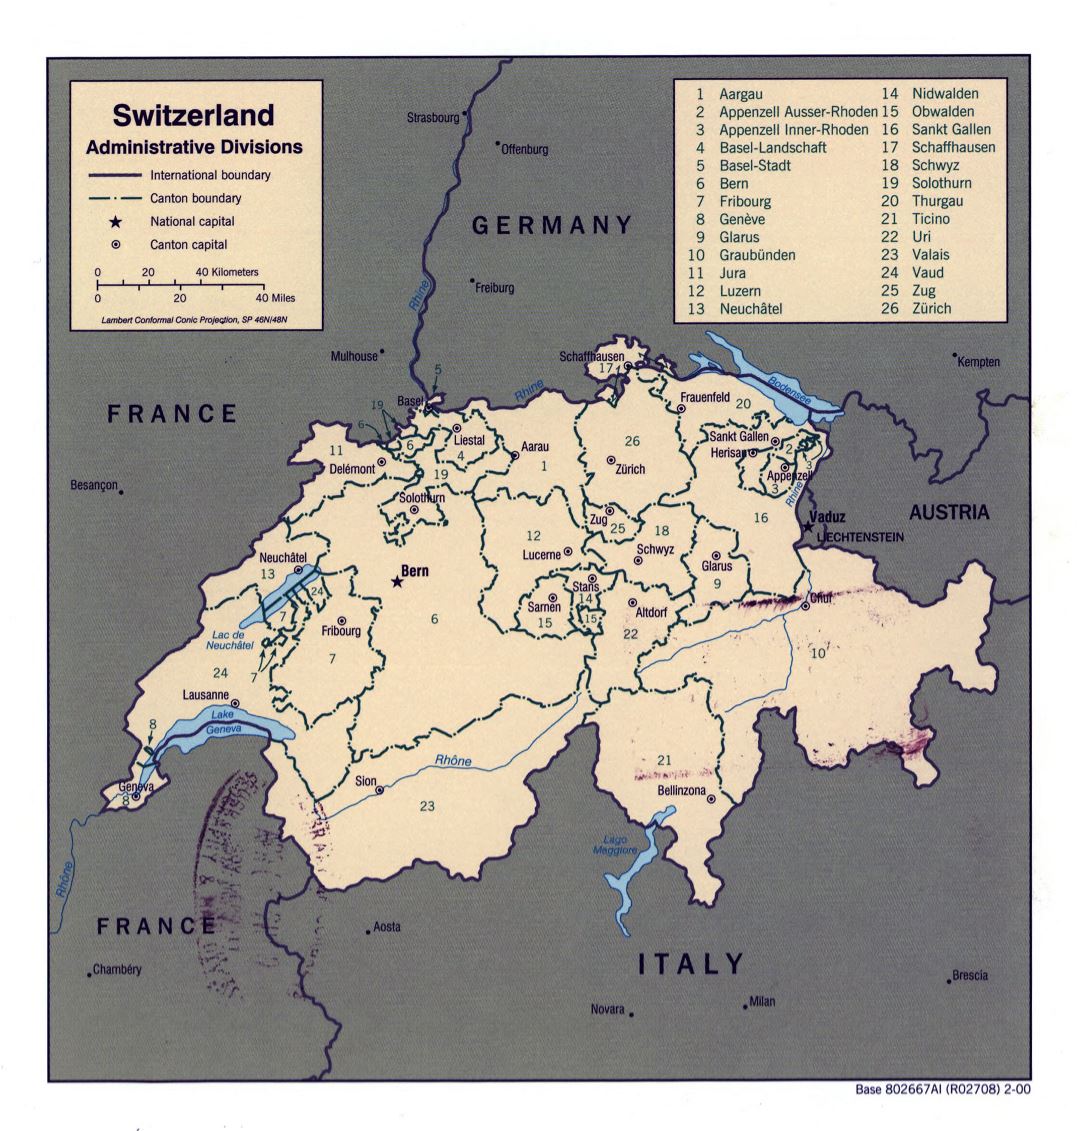 Grande detallado mapa de administrativas divisiones de Suiza - 2000